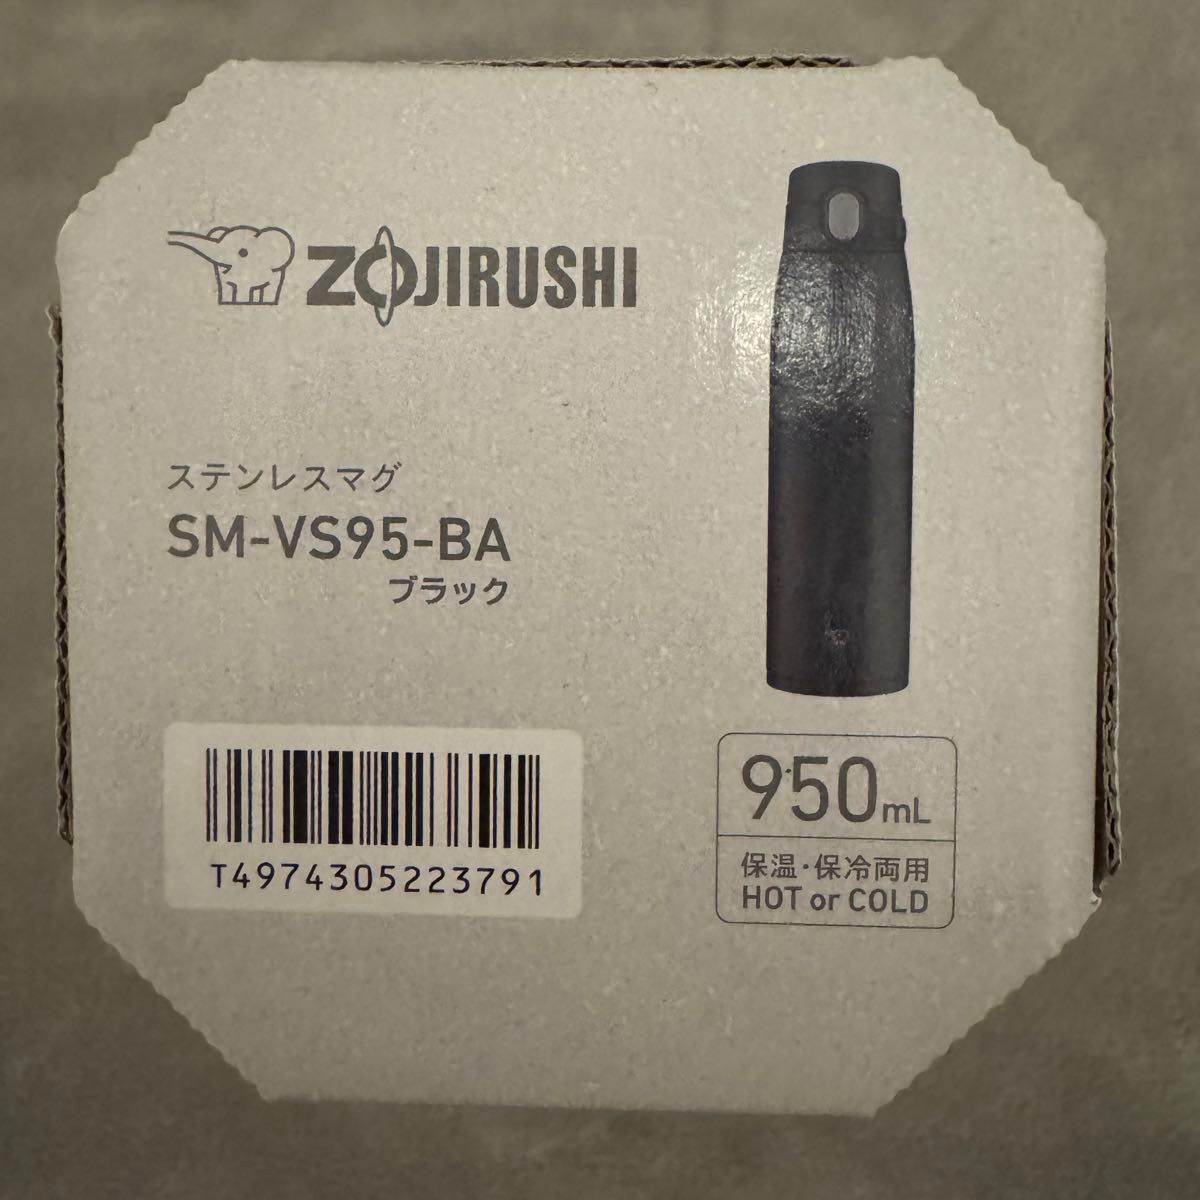 【新品未使用】象印 ステンレスマグ SM-VS95-BA ブラック 950ml